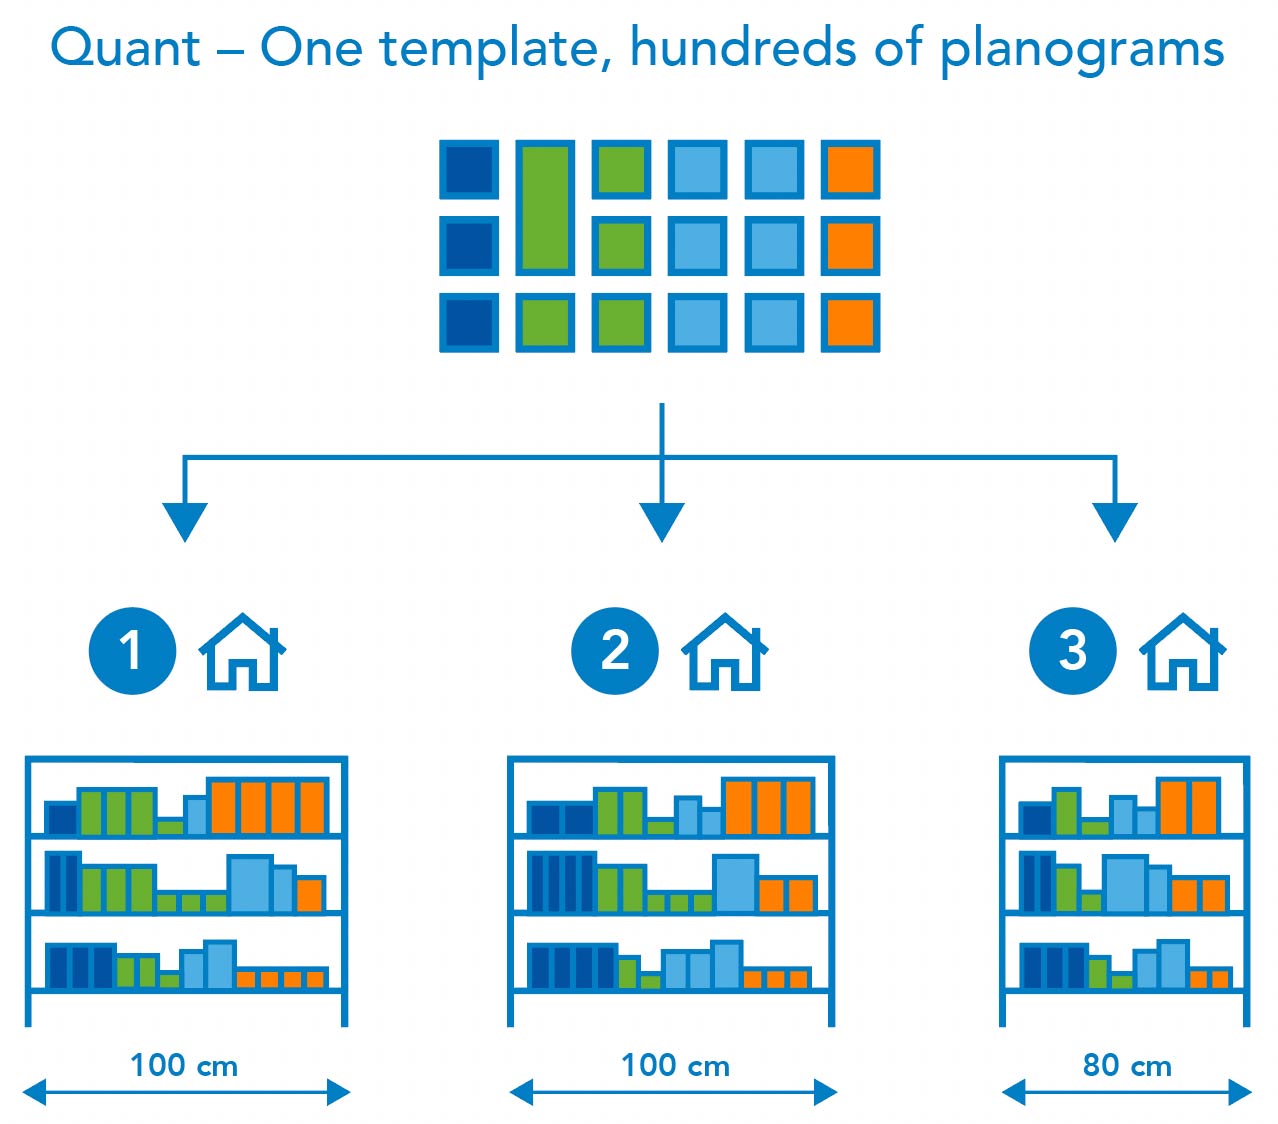 Quant – Store specific planograms